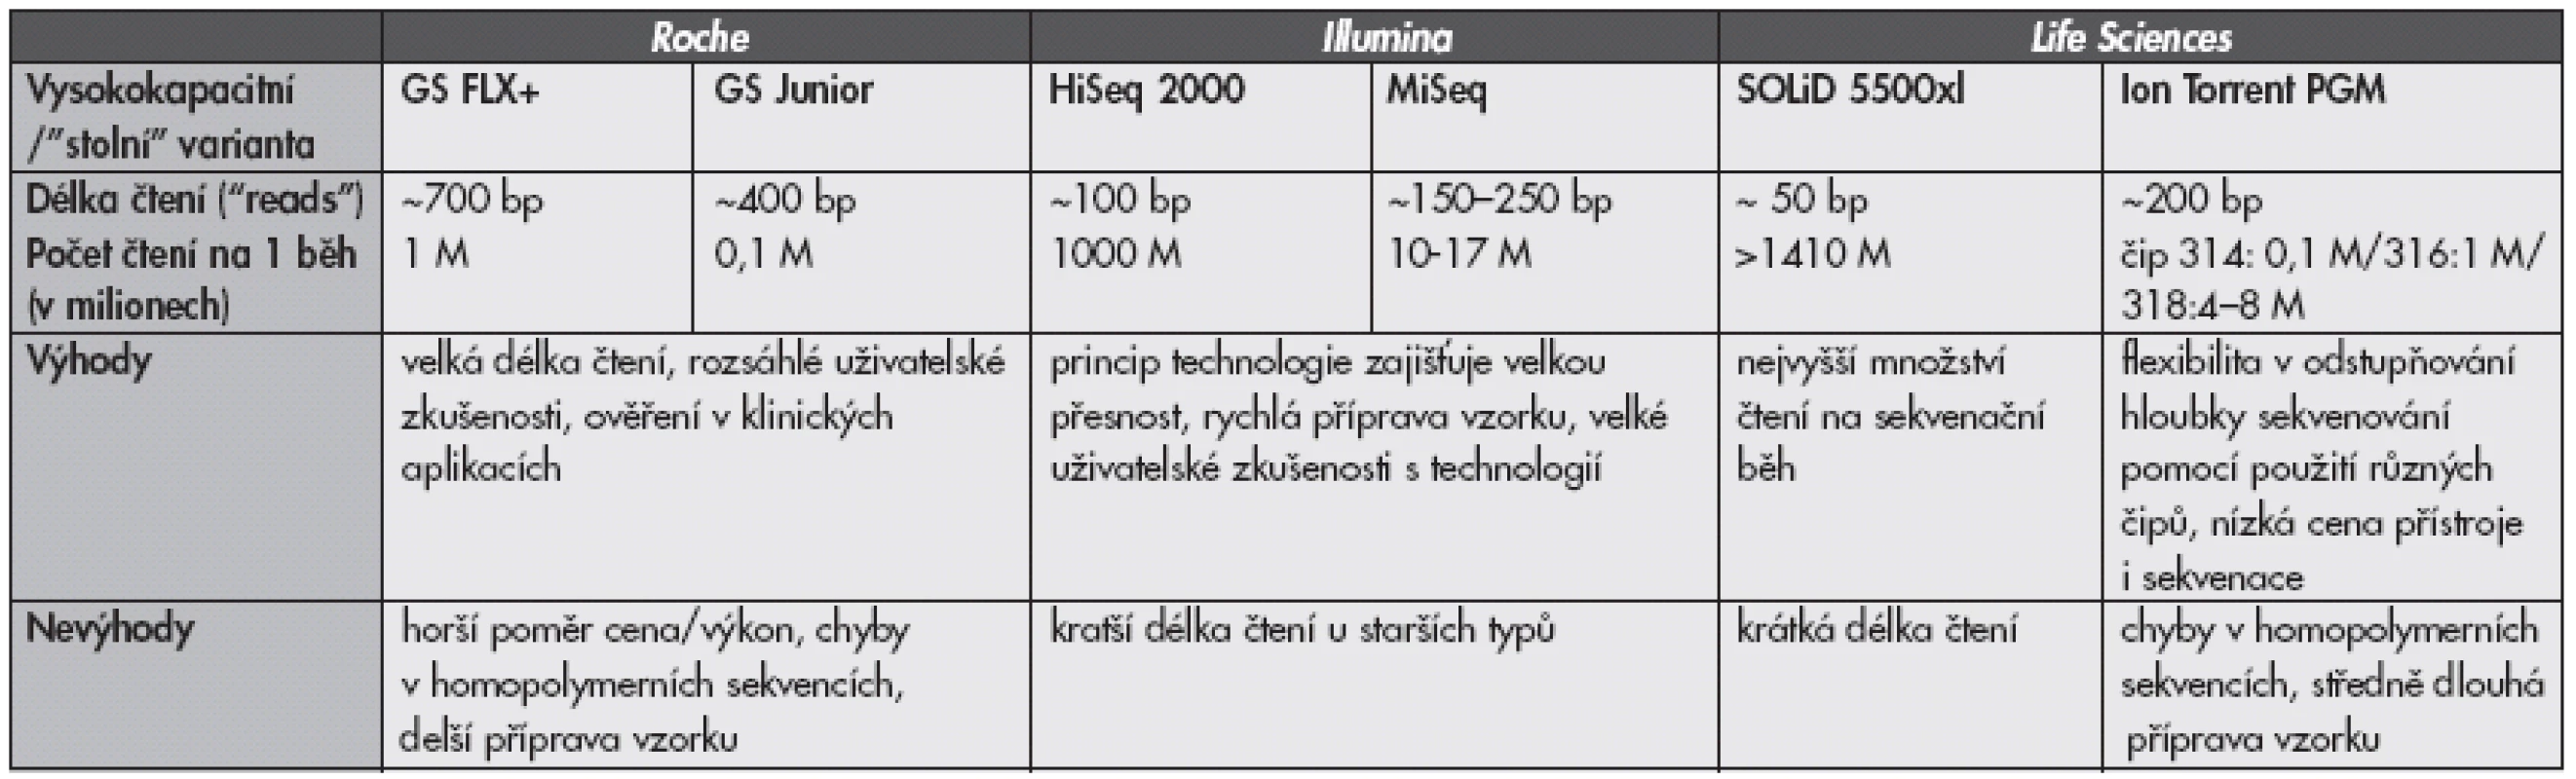 Porovnání sekvenačních technologií dostupných v ČR v roce 2012. Údaje byly převzaty z dostupných firemních specifikací a/nebo z referencí (8,9).